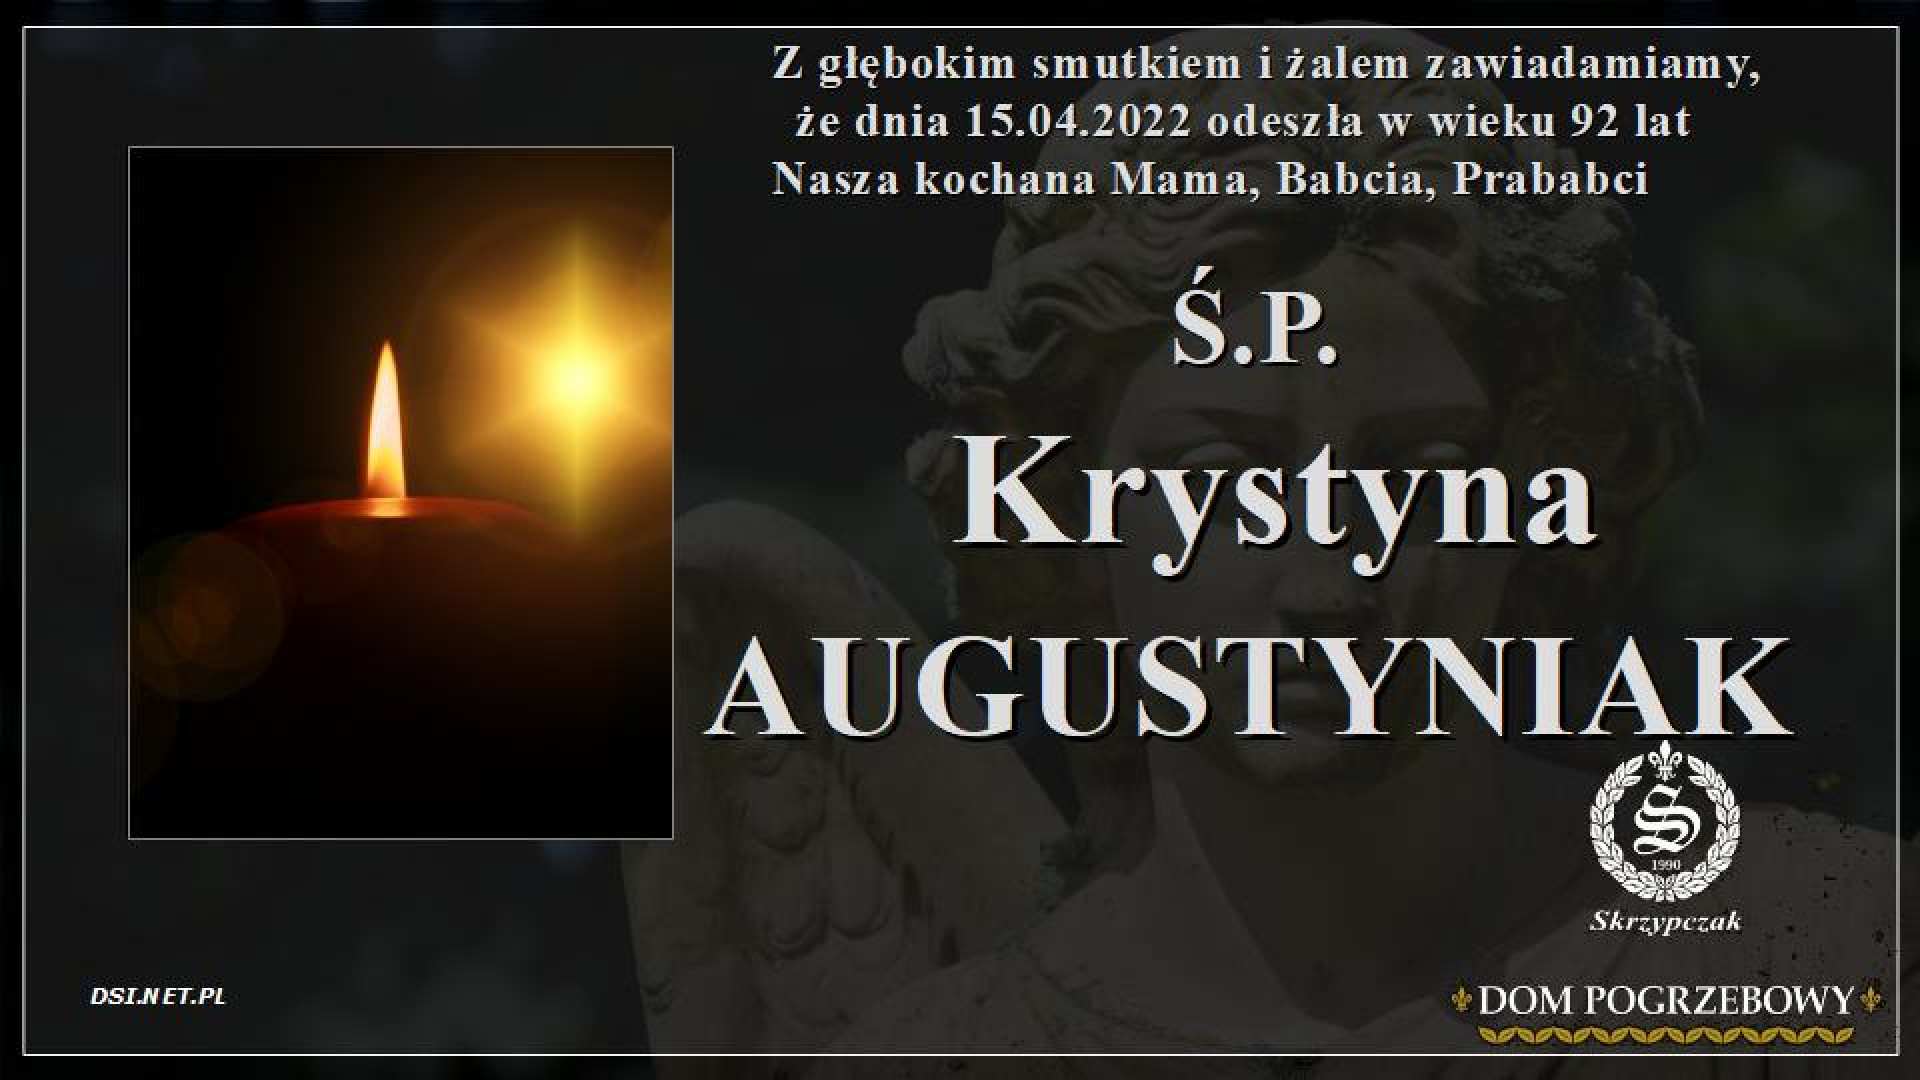 Ś.P. Krystyna Augustyniak